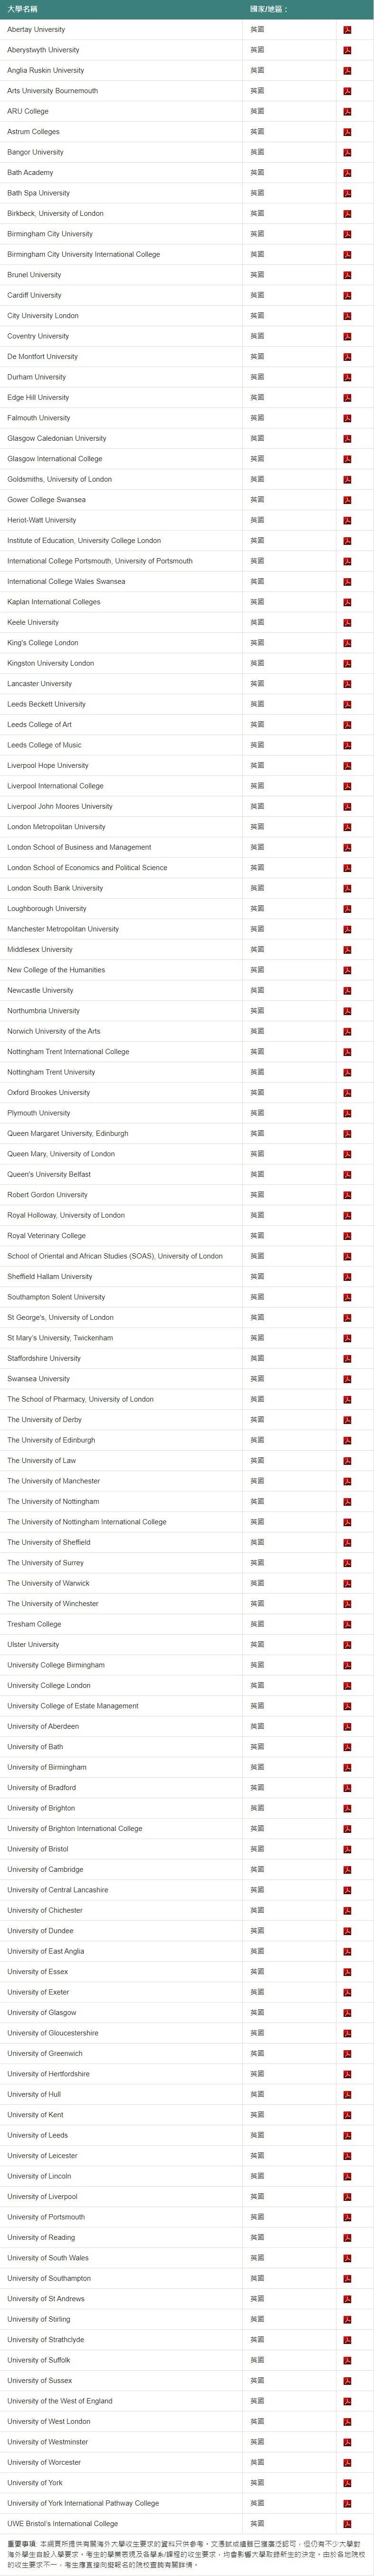 DSE可申请的全球大学名单—英国篇